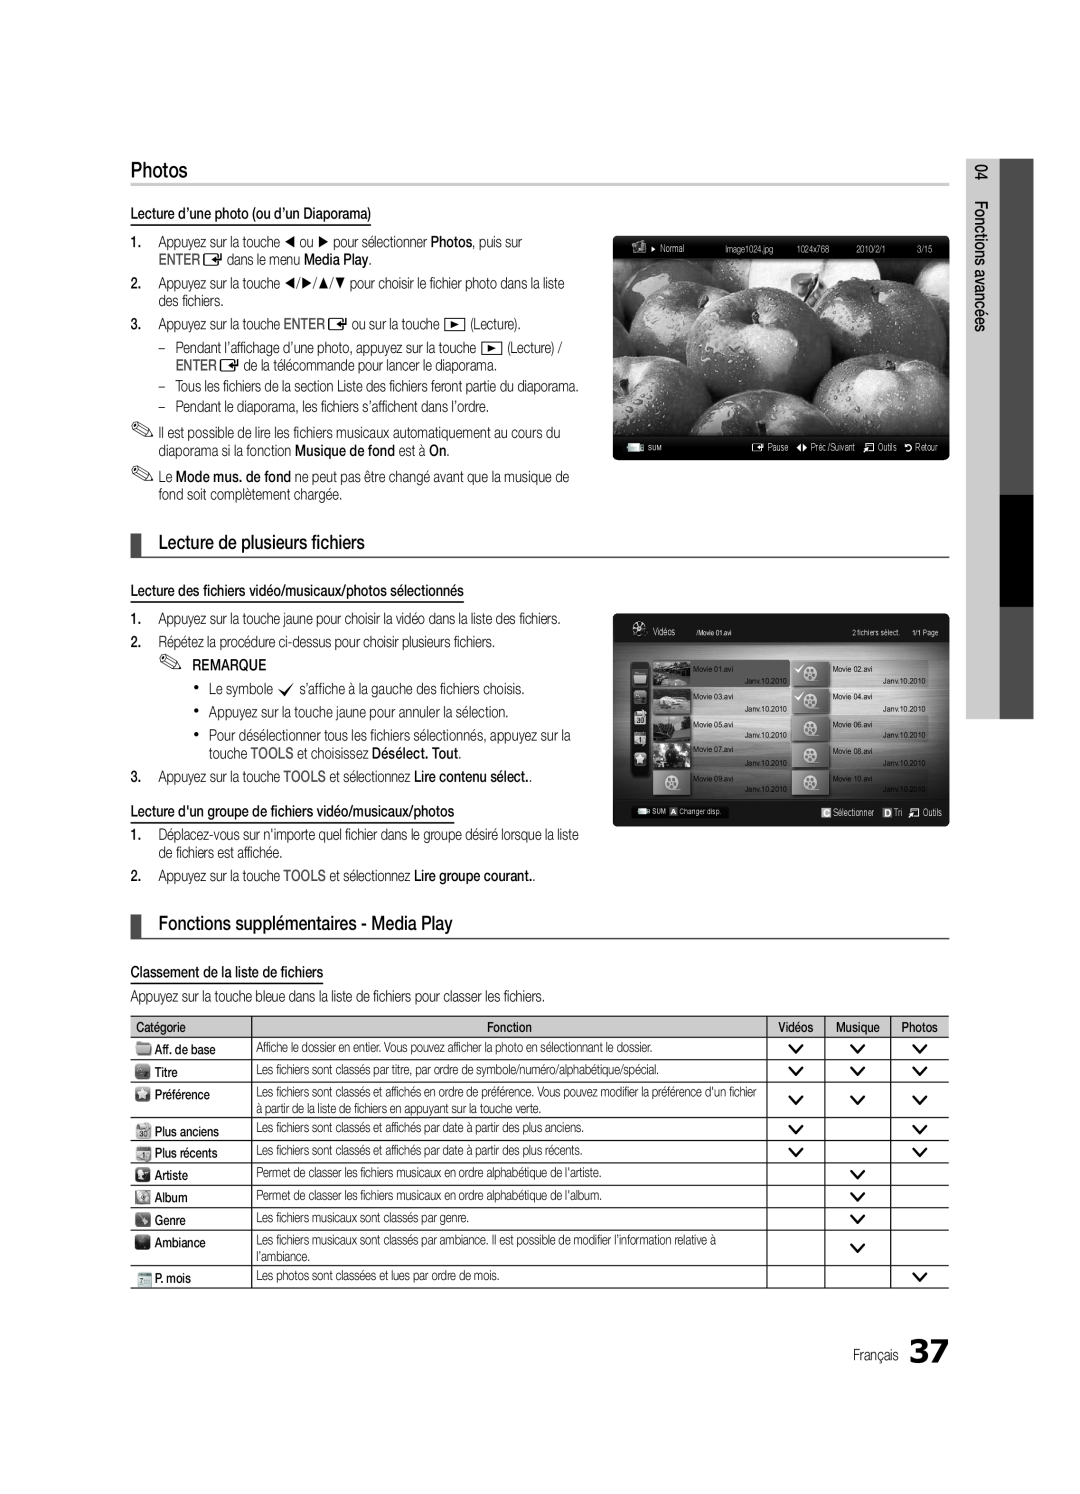 Samsung UC5000-ZC Lecture de plusieurs fichiers, Fonctions supplémentaires - Media Play, Photos, Fonctions avancées 